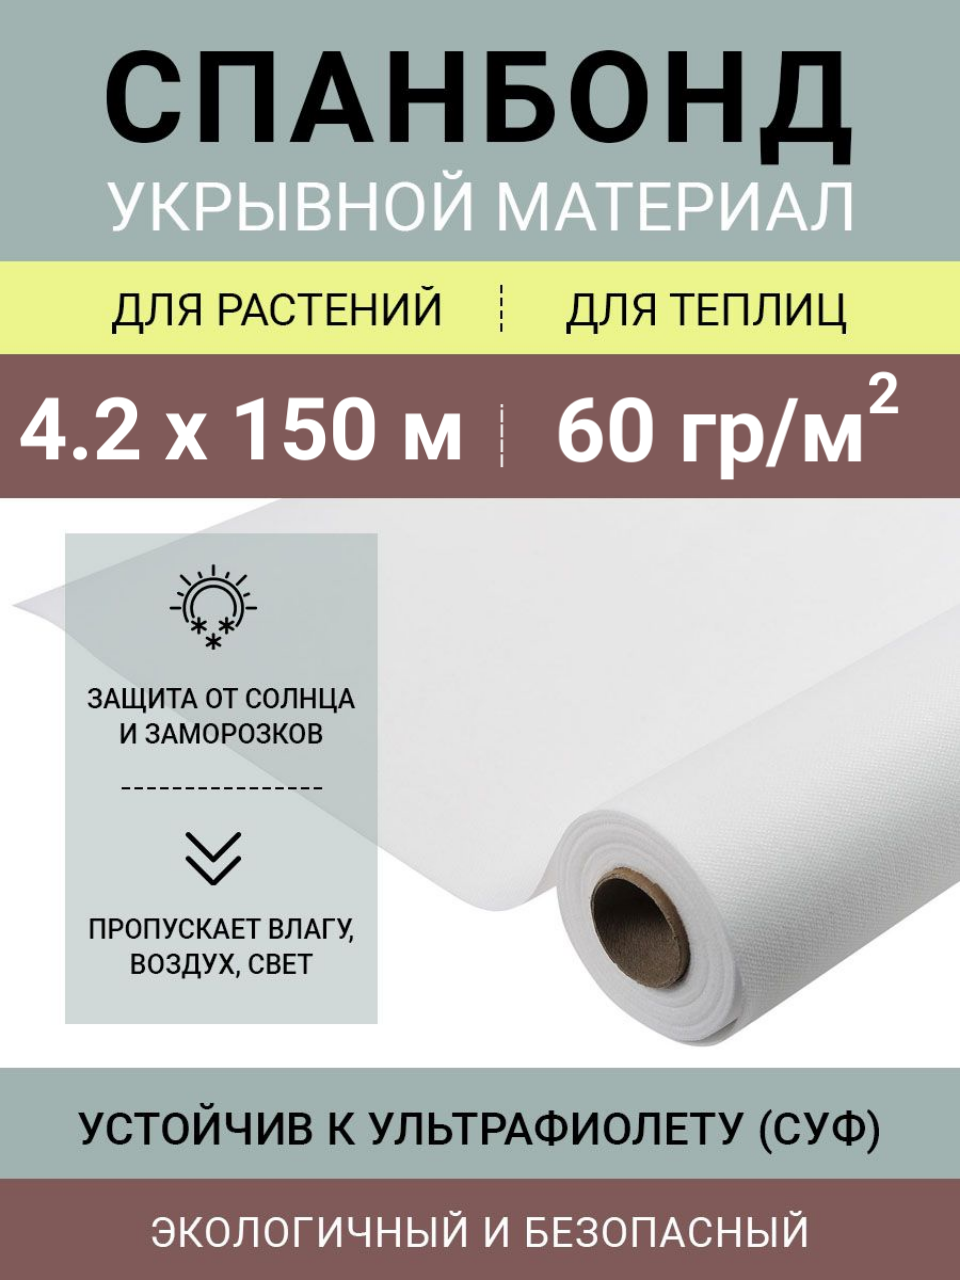 Белый укрывной нетканый материал Спанбонд СУФ 60 г/м2 в рулоне 4.2х150 м (сложен пополам)